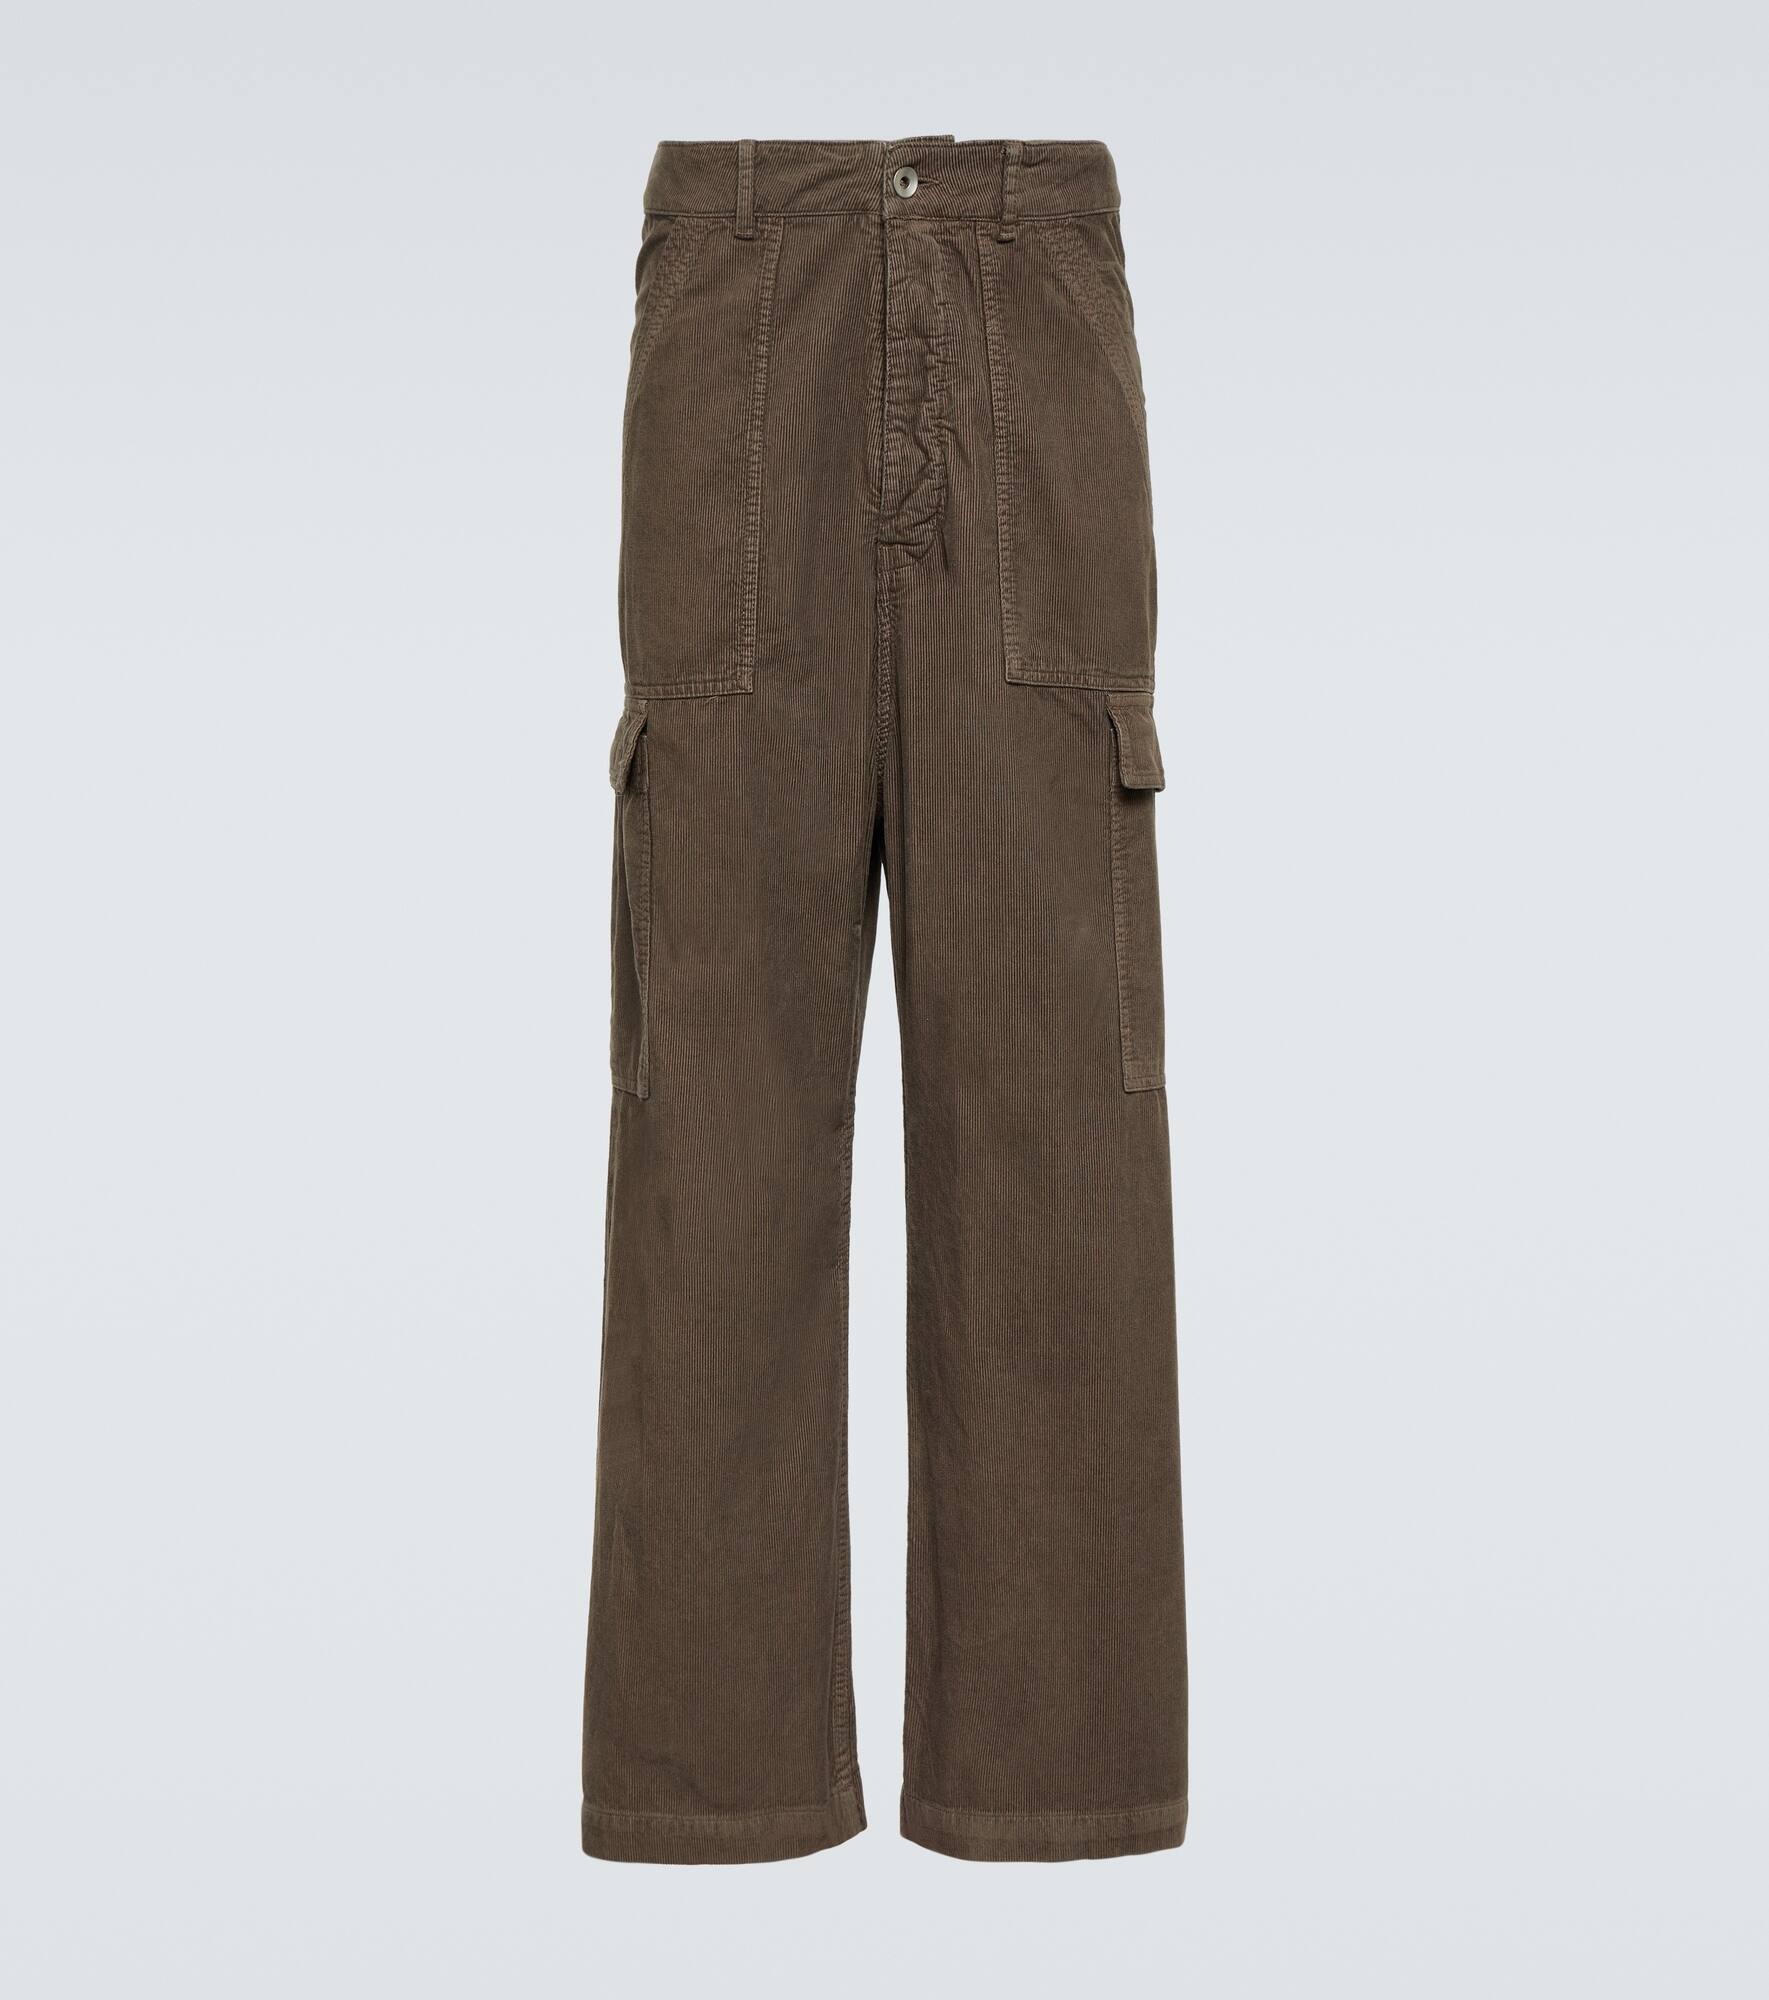 DRKSHDW cotton cargo pants - 1